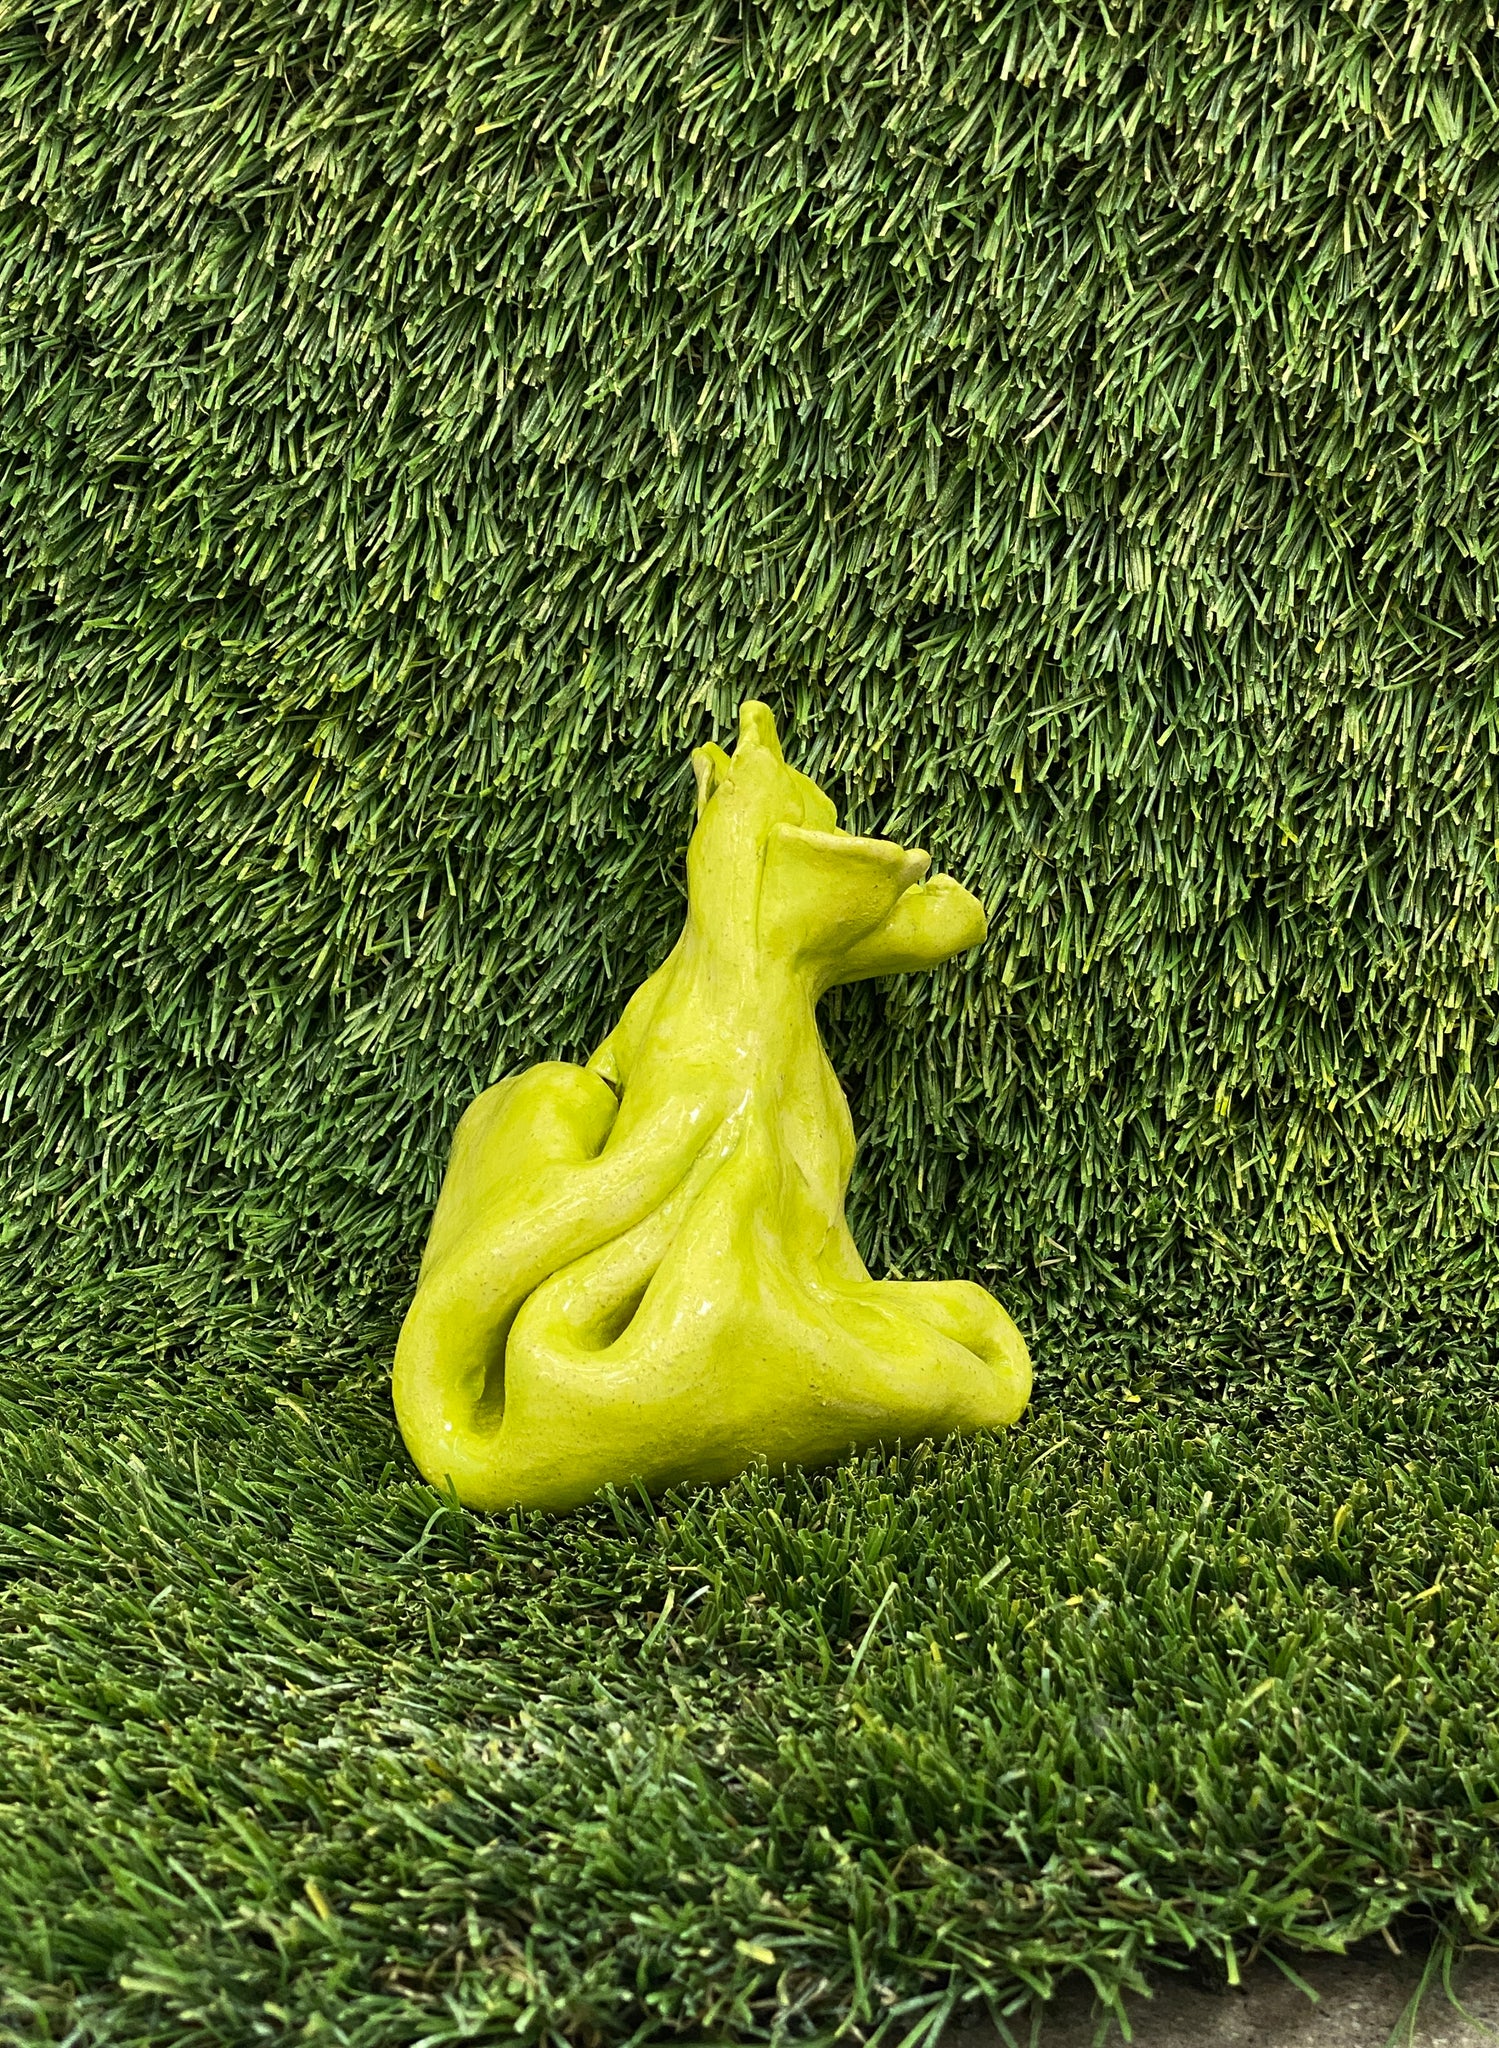 Ceramic sculpture of dog poop bag in lime green